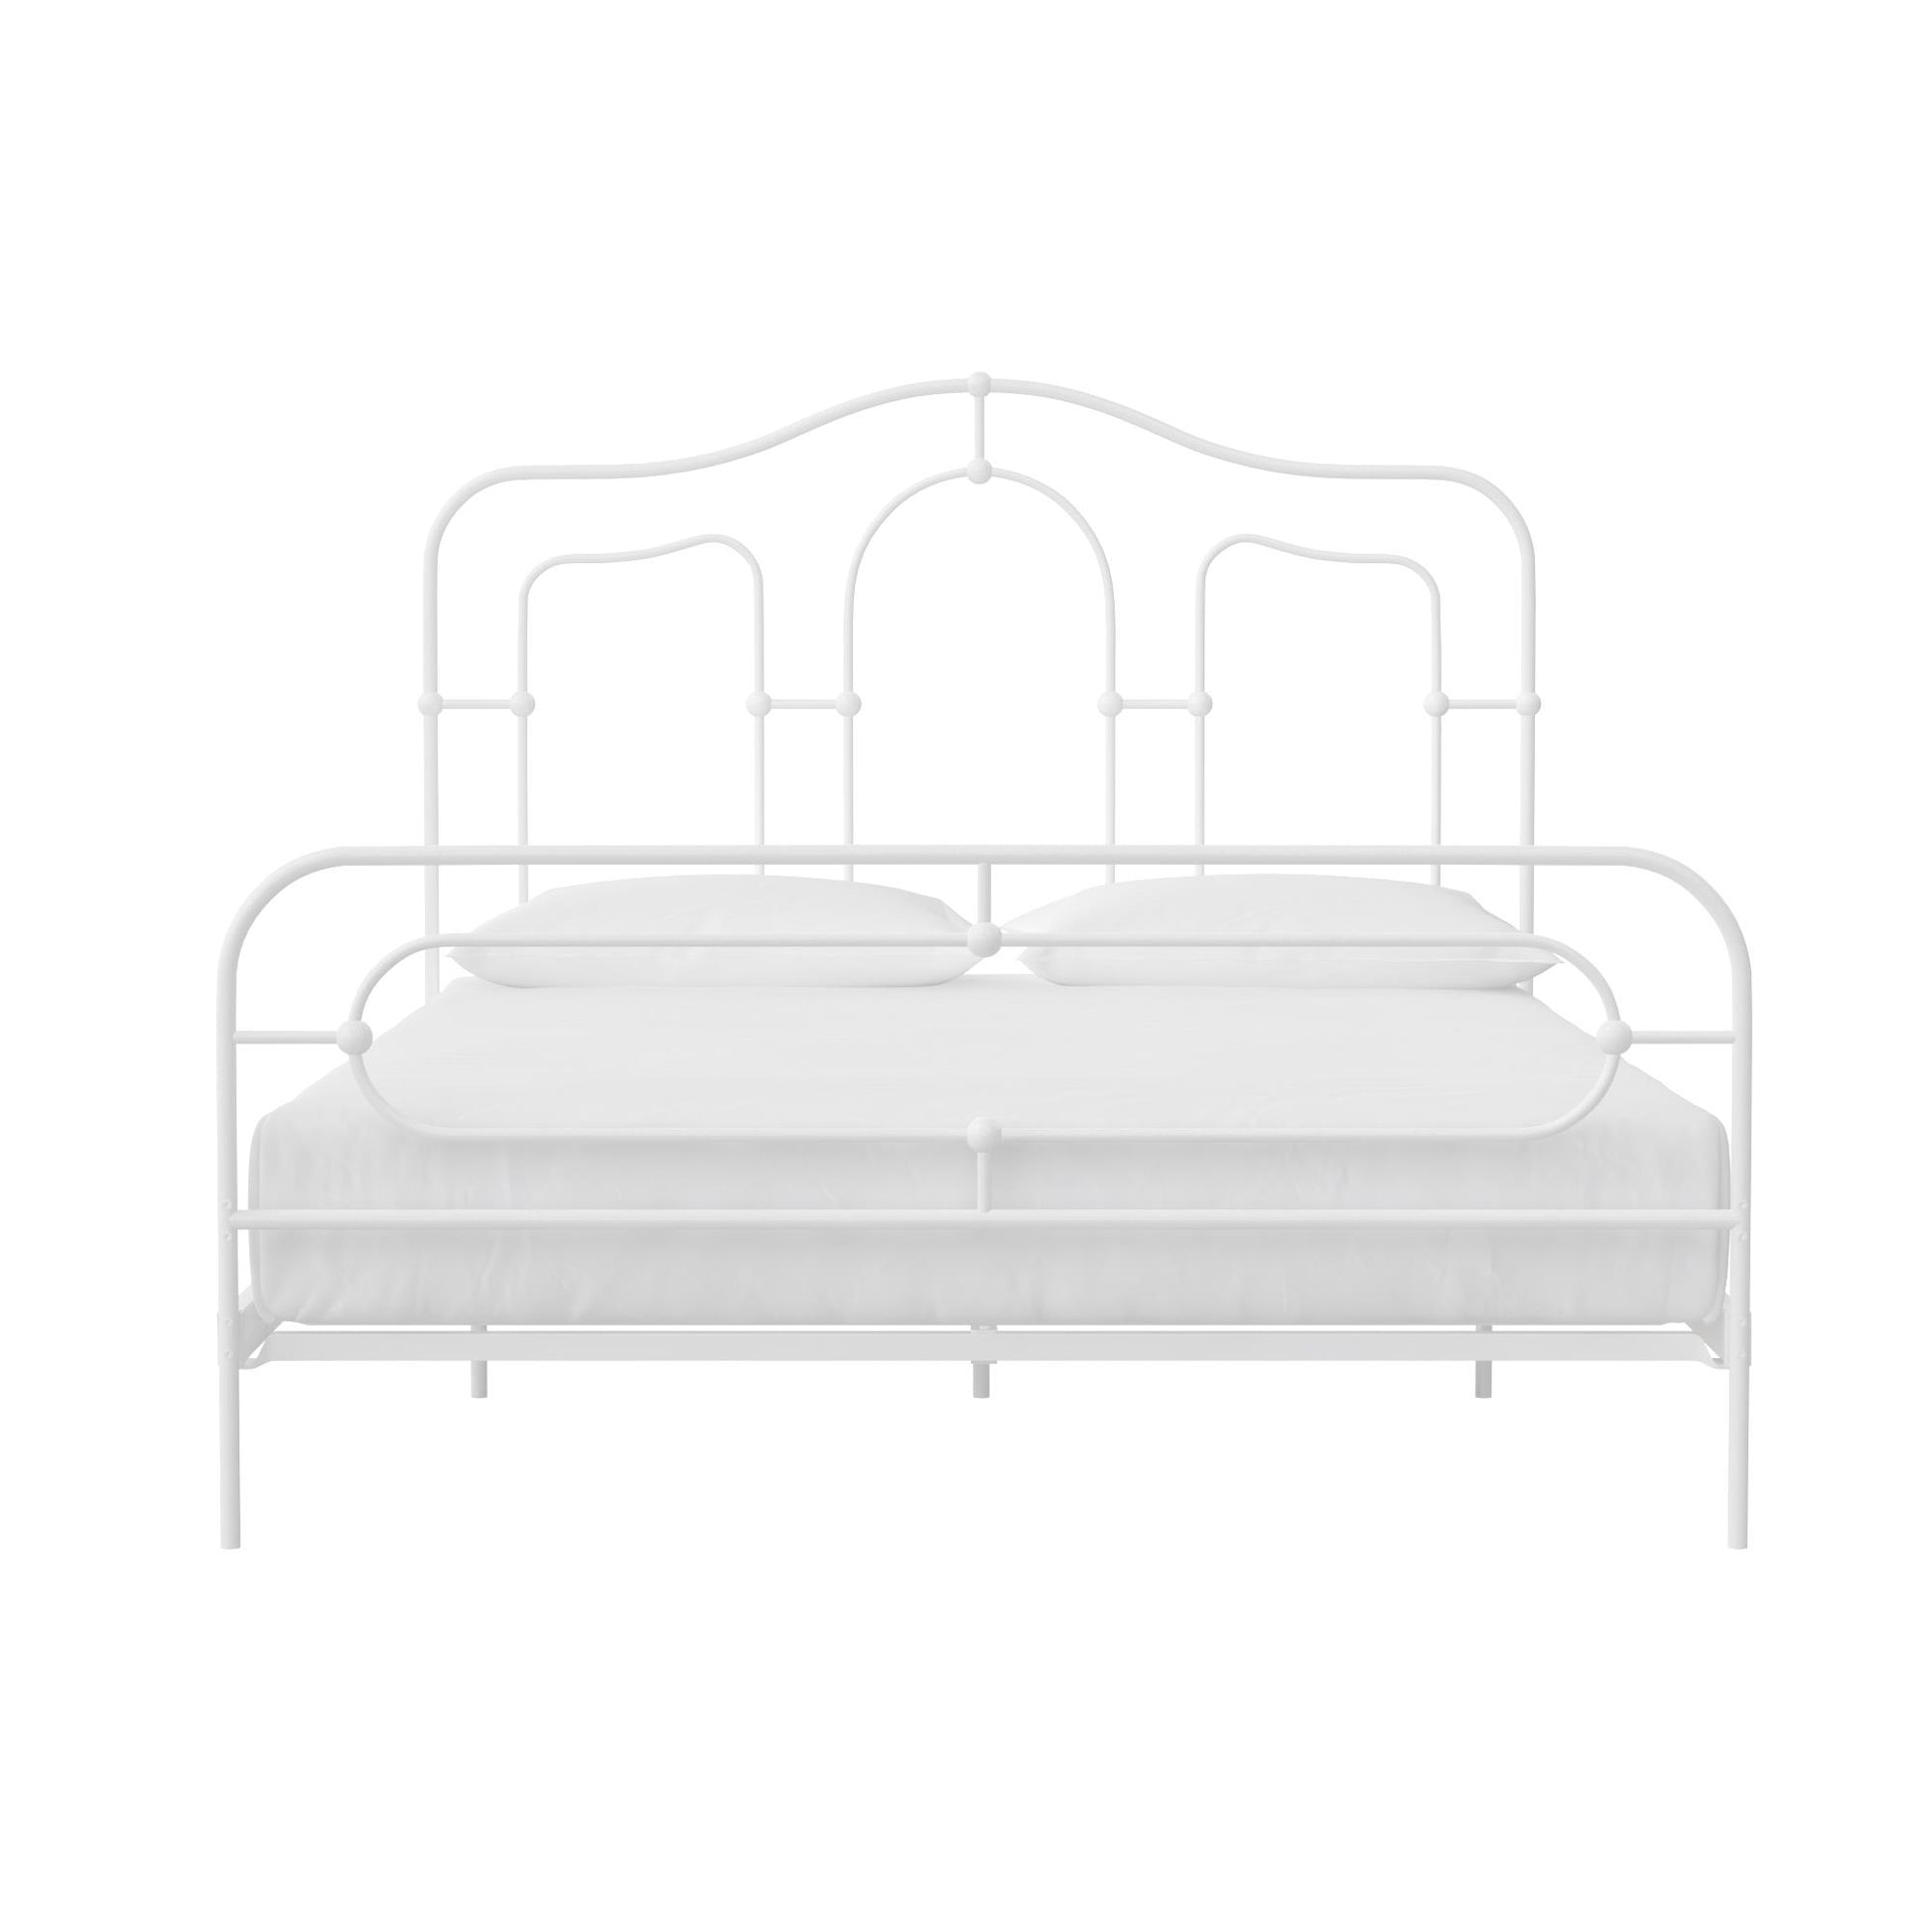 Primrose Metal Bed - White - Full